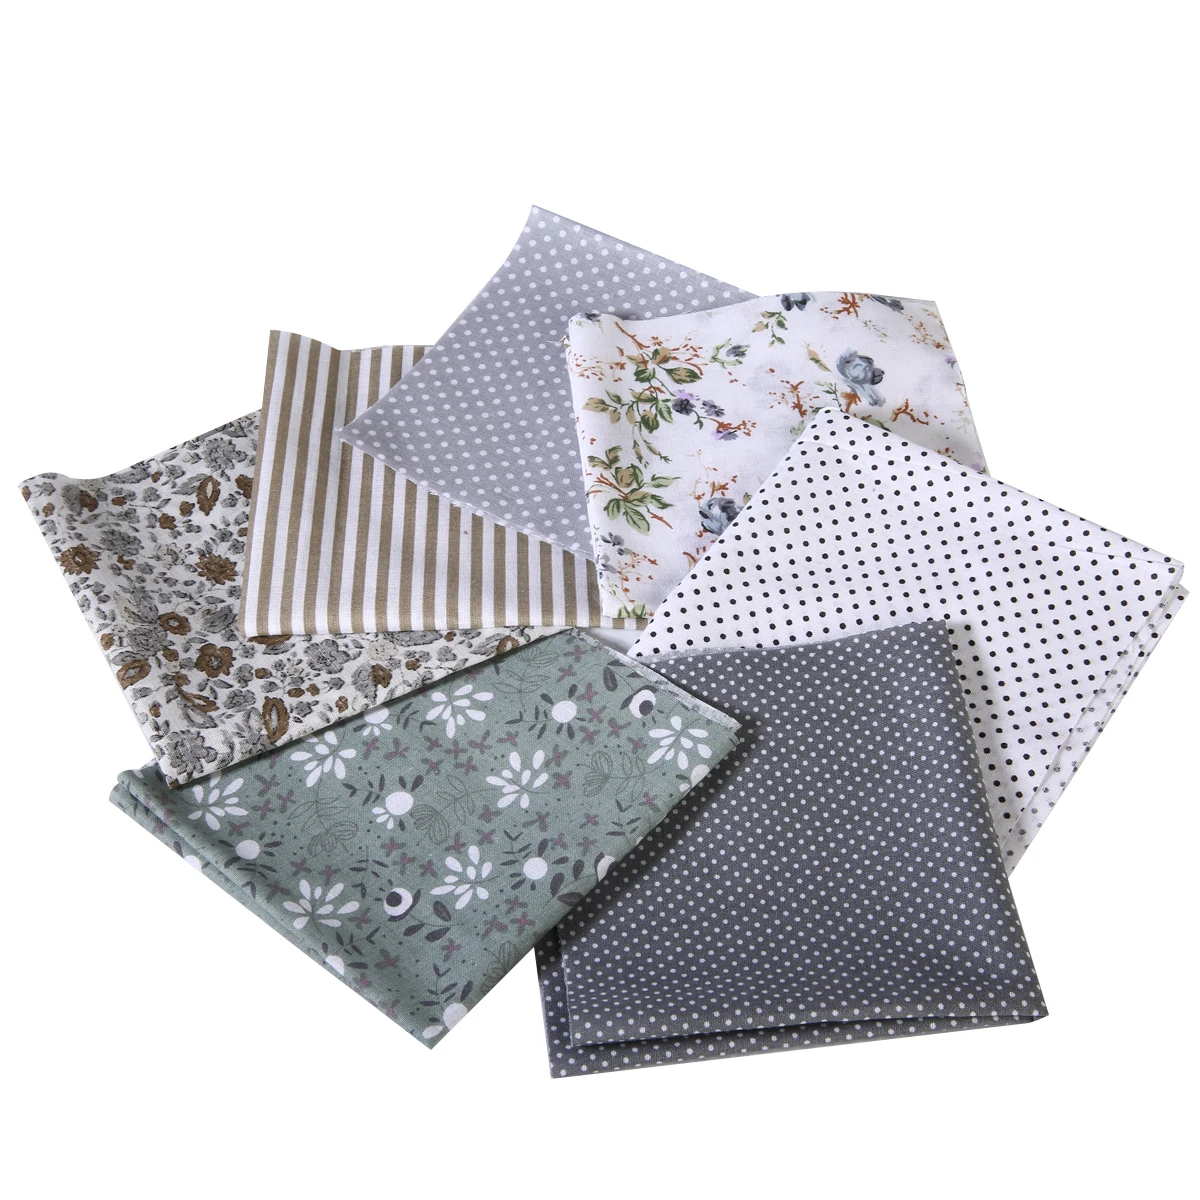 2019 7 шт. 25x25 см хлопчатобумажная ткань смешанные квадраты нарезанное одеяло